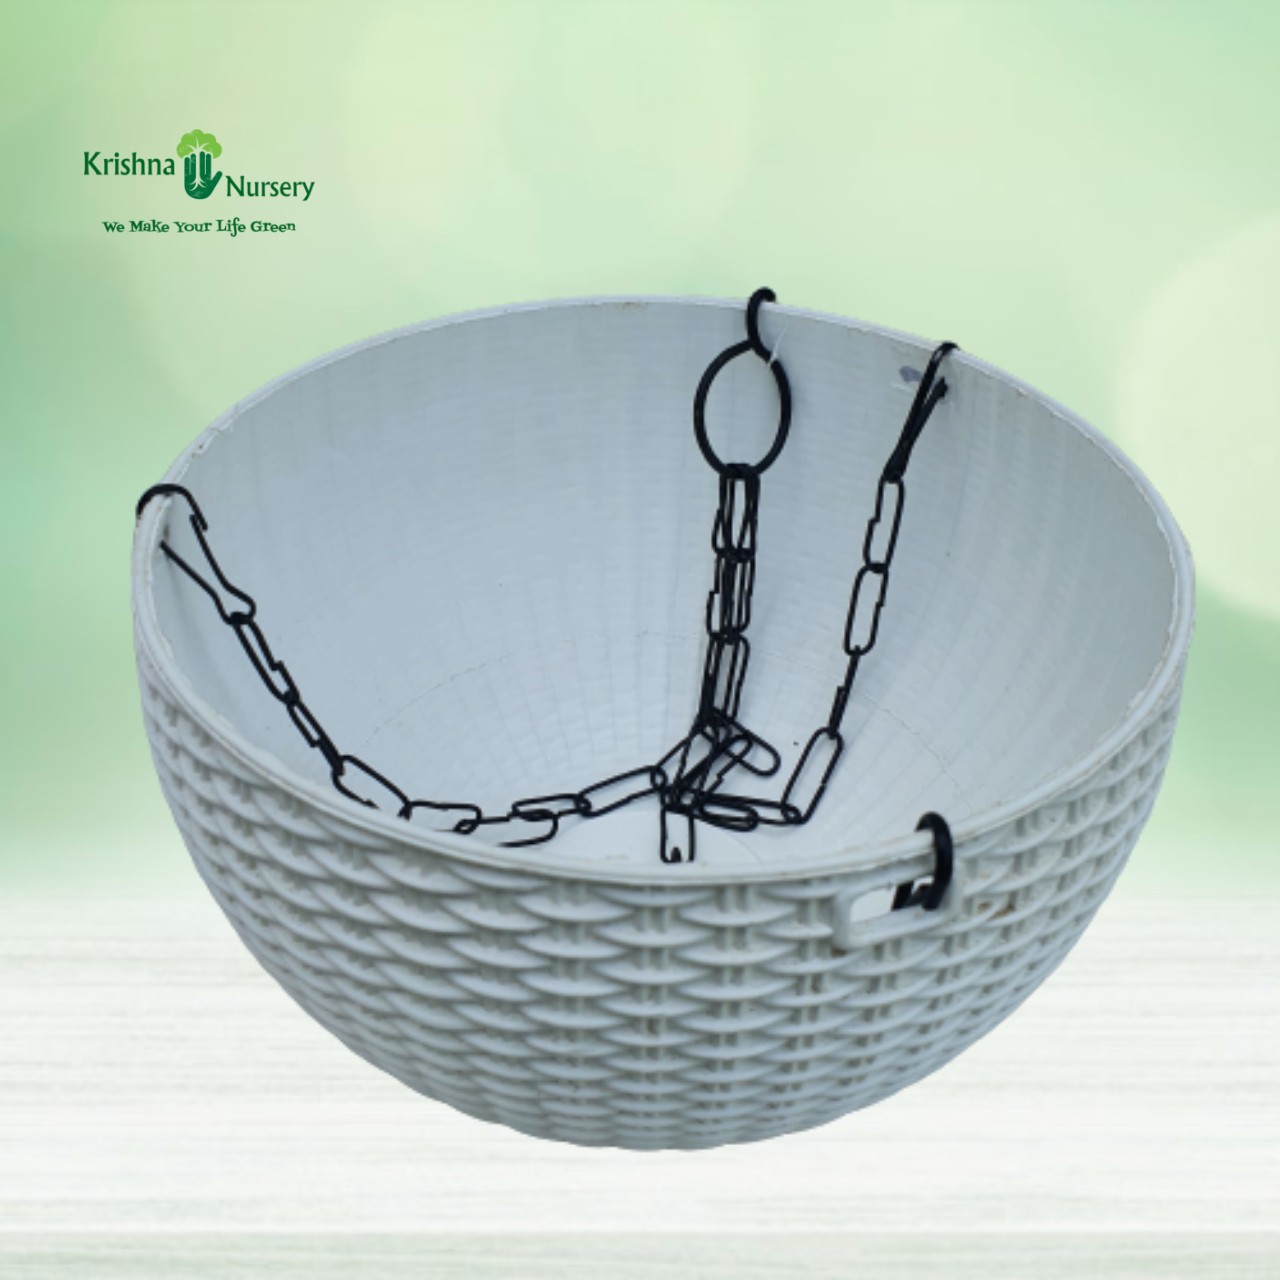 Hanging Baskets - Plastic Pots -  - hanging-baskets -   